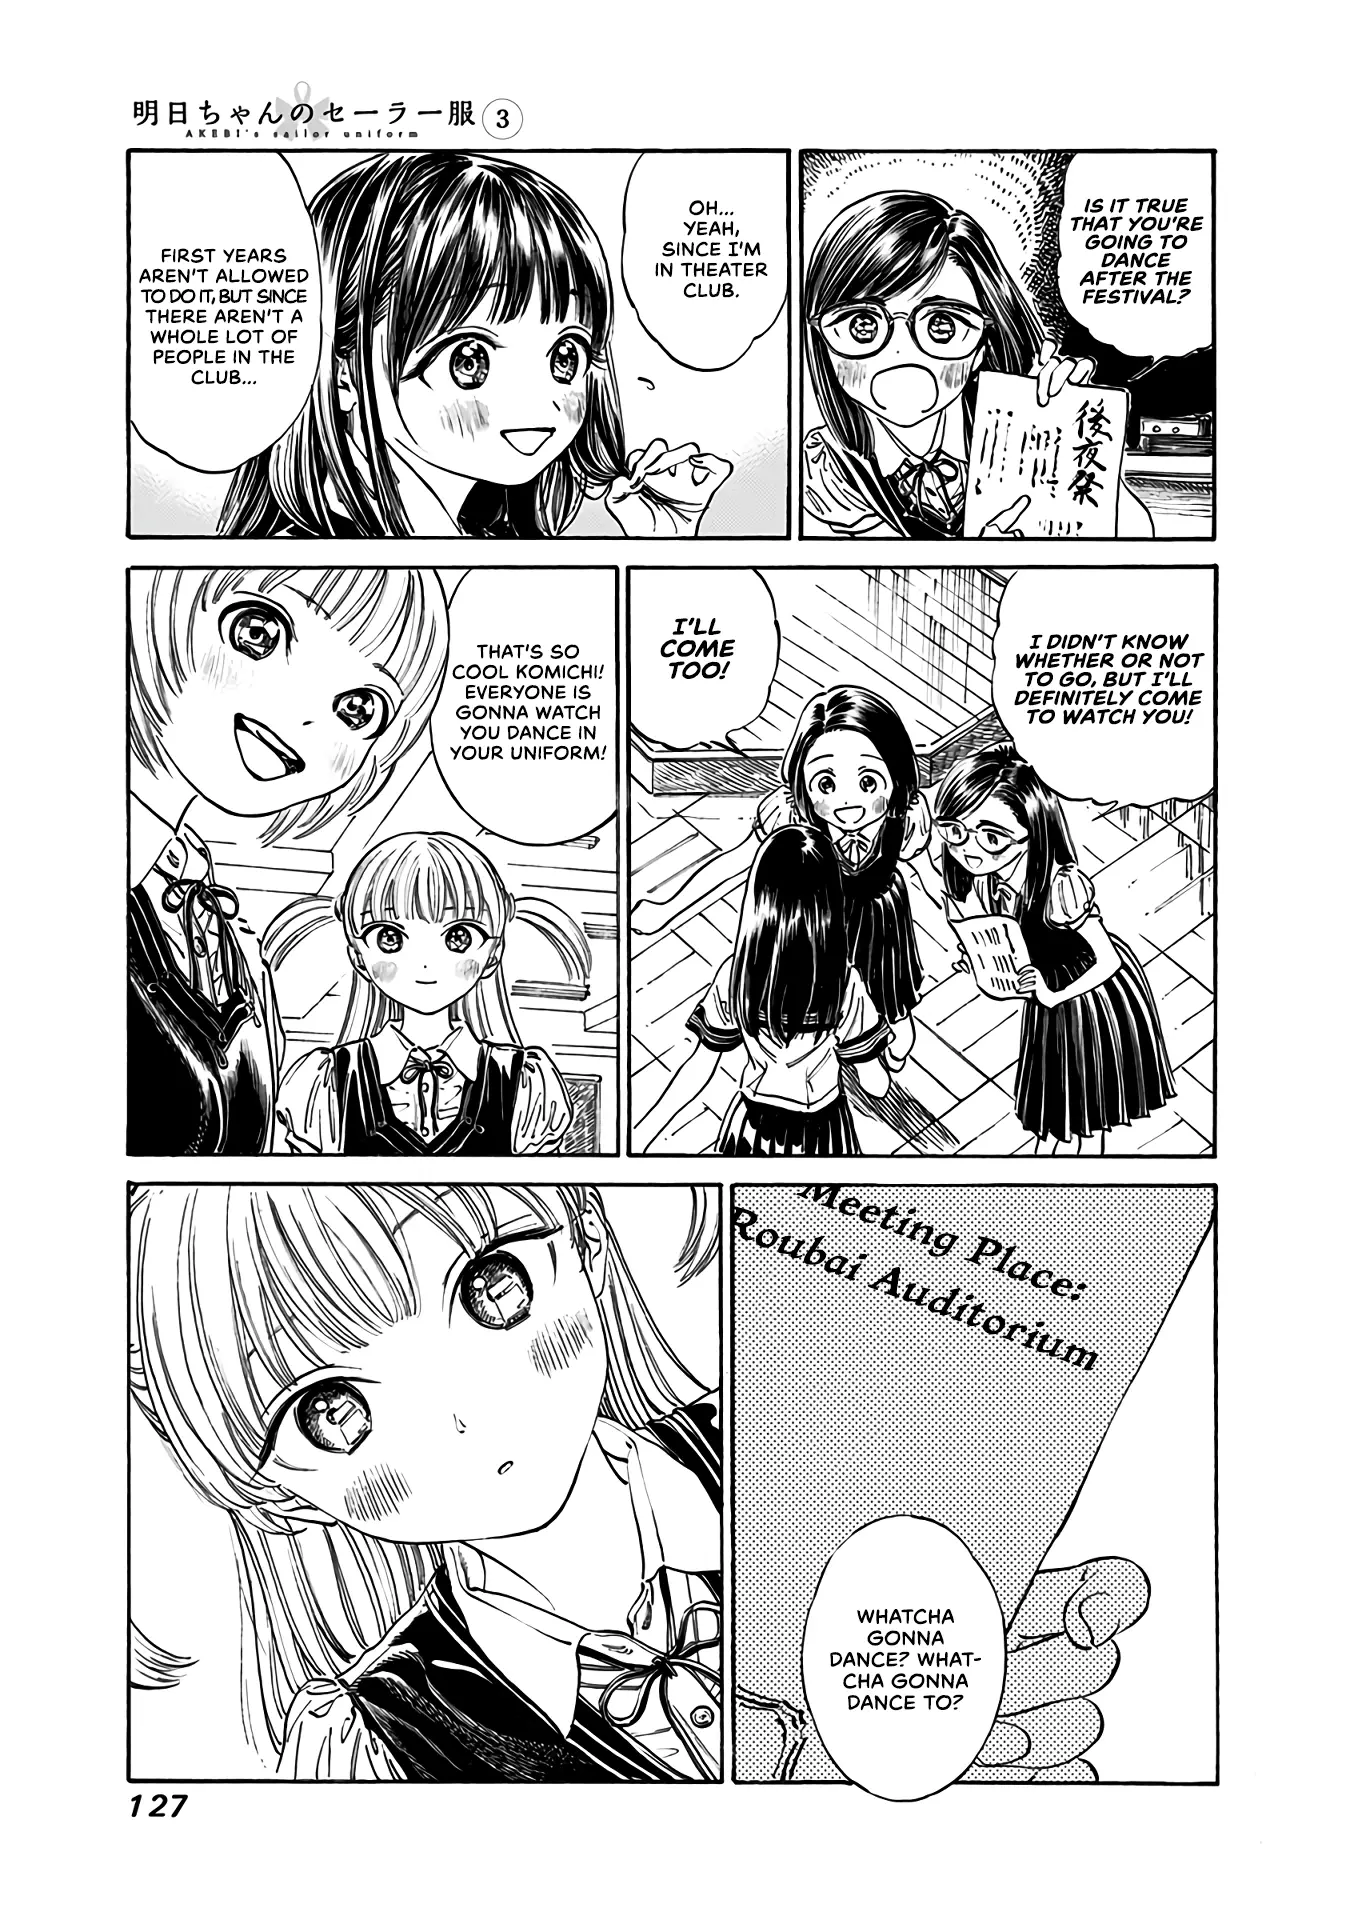 Akebi-Chan No Sailor Fuku - 18 page 3